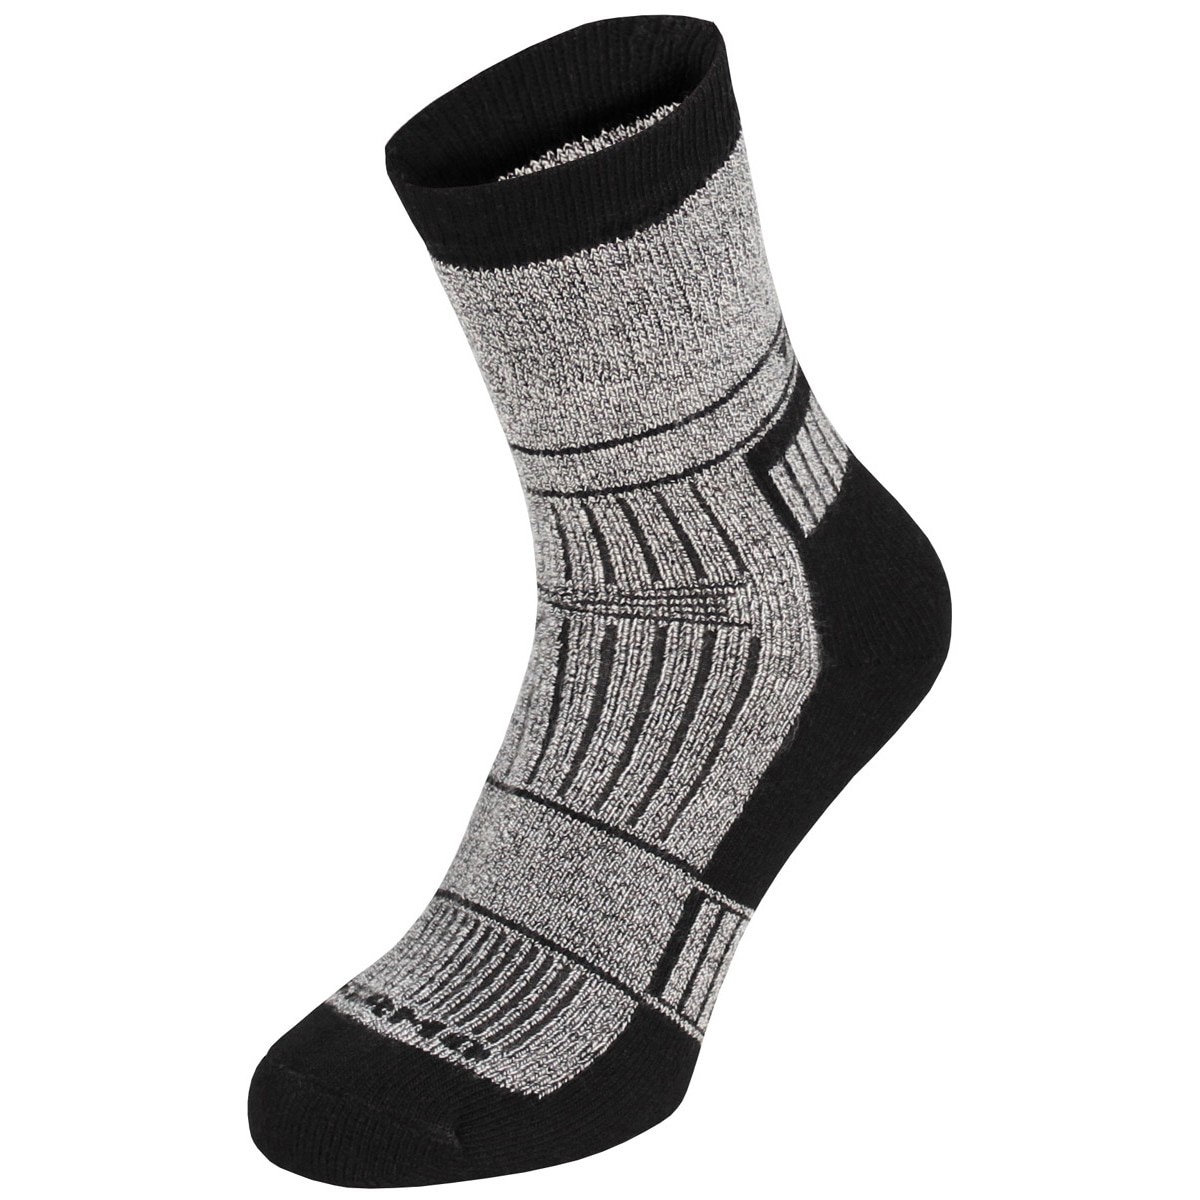 Шкарпетки MFH Thermo Alaska - Сірі